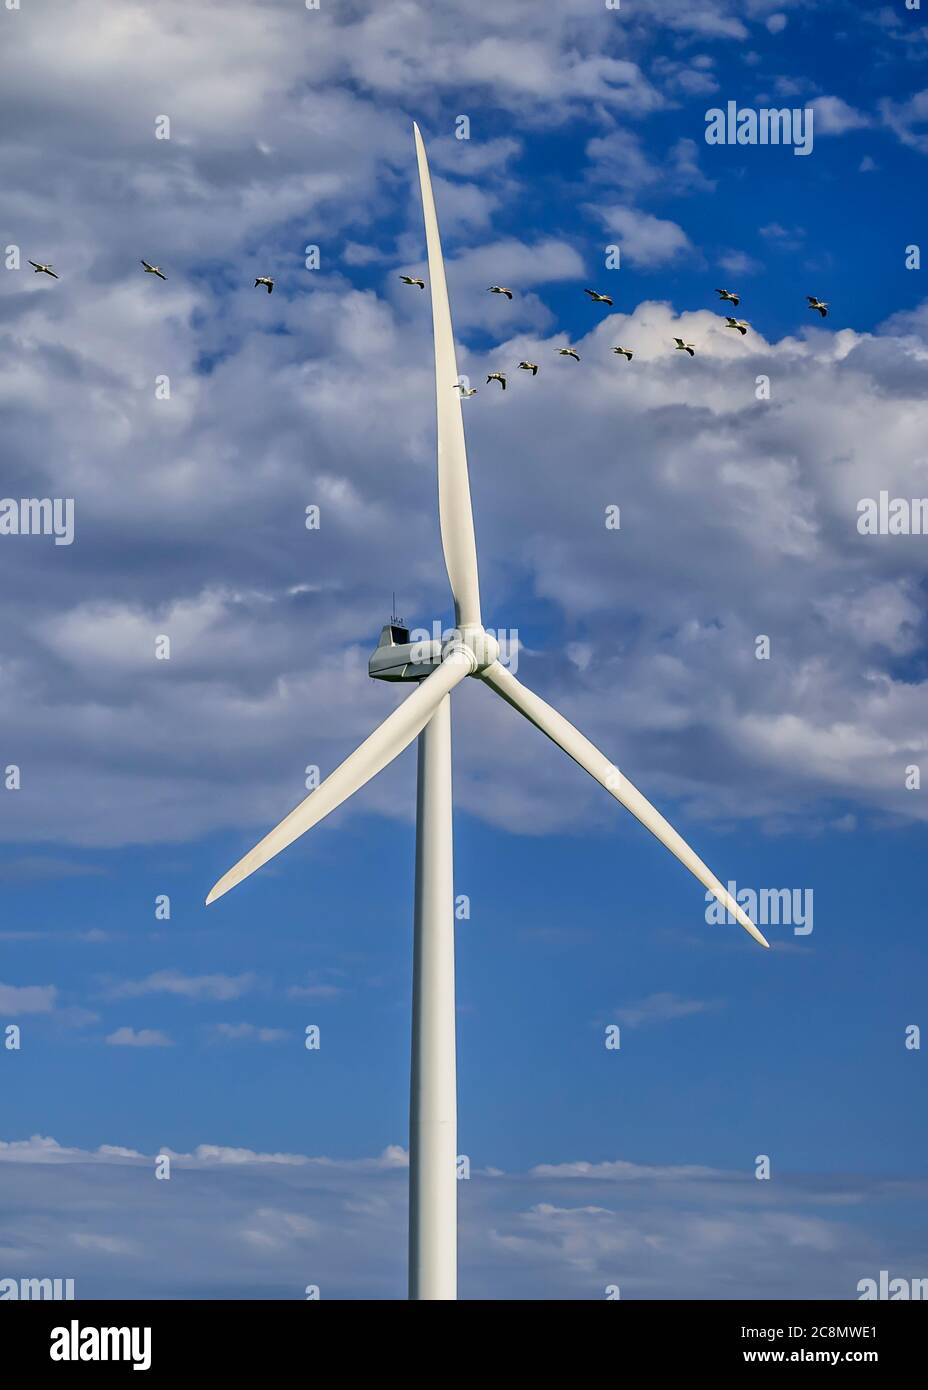 Pélicans volant près d'une éolienne, St. Leon, Manitoba, Canada. Banque D'Images